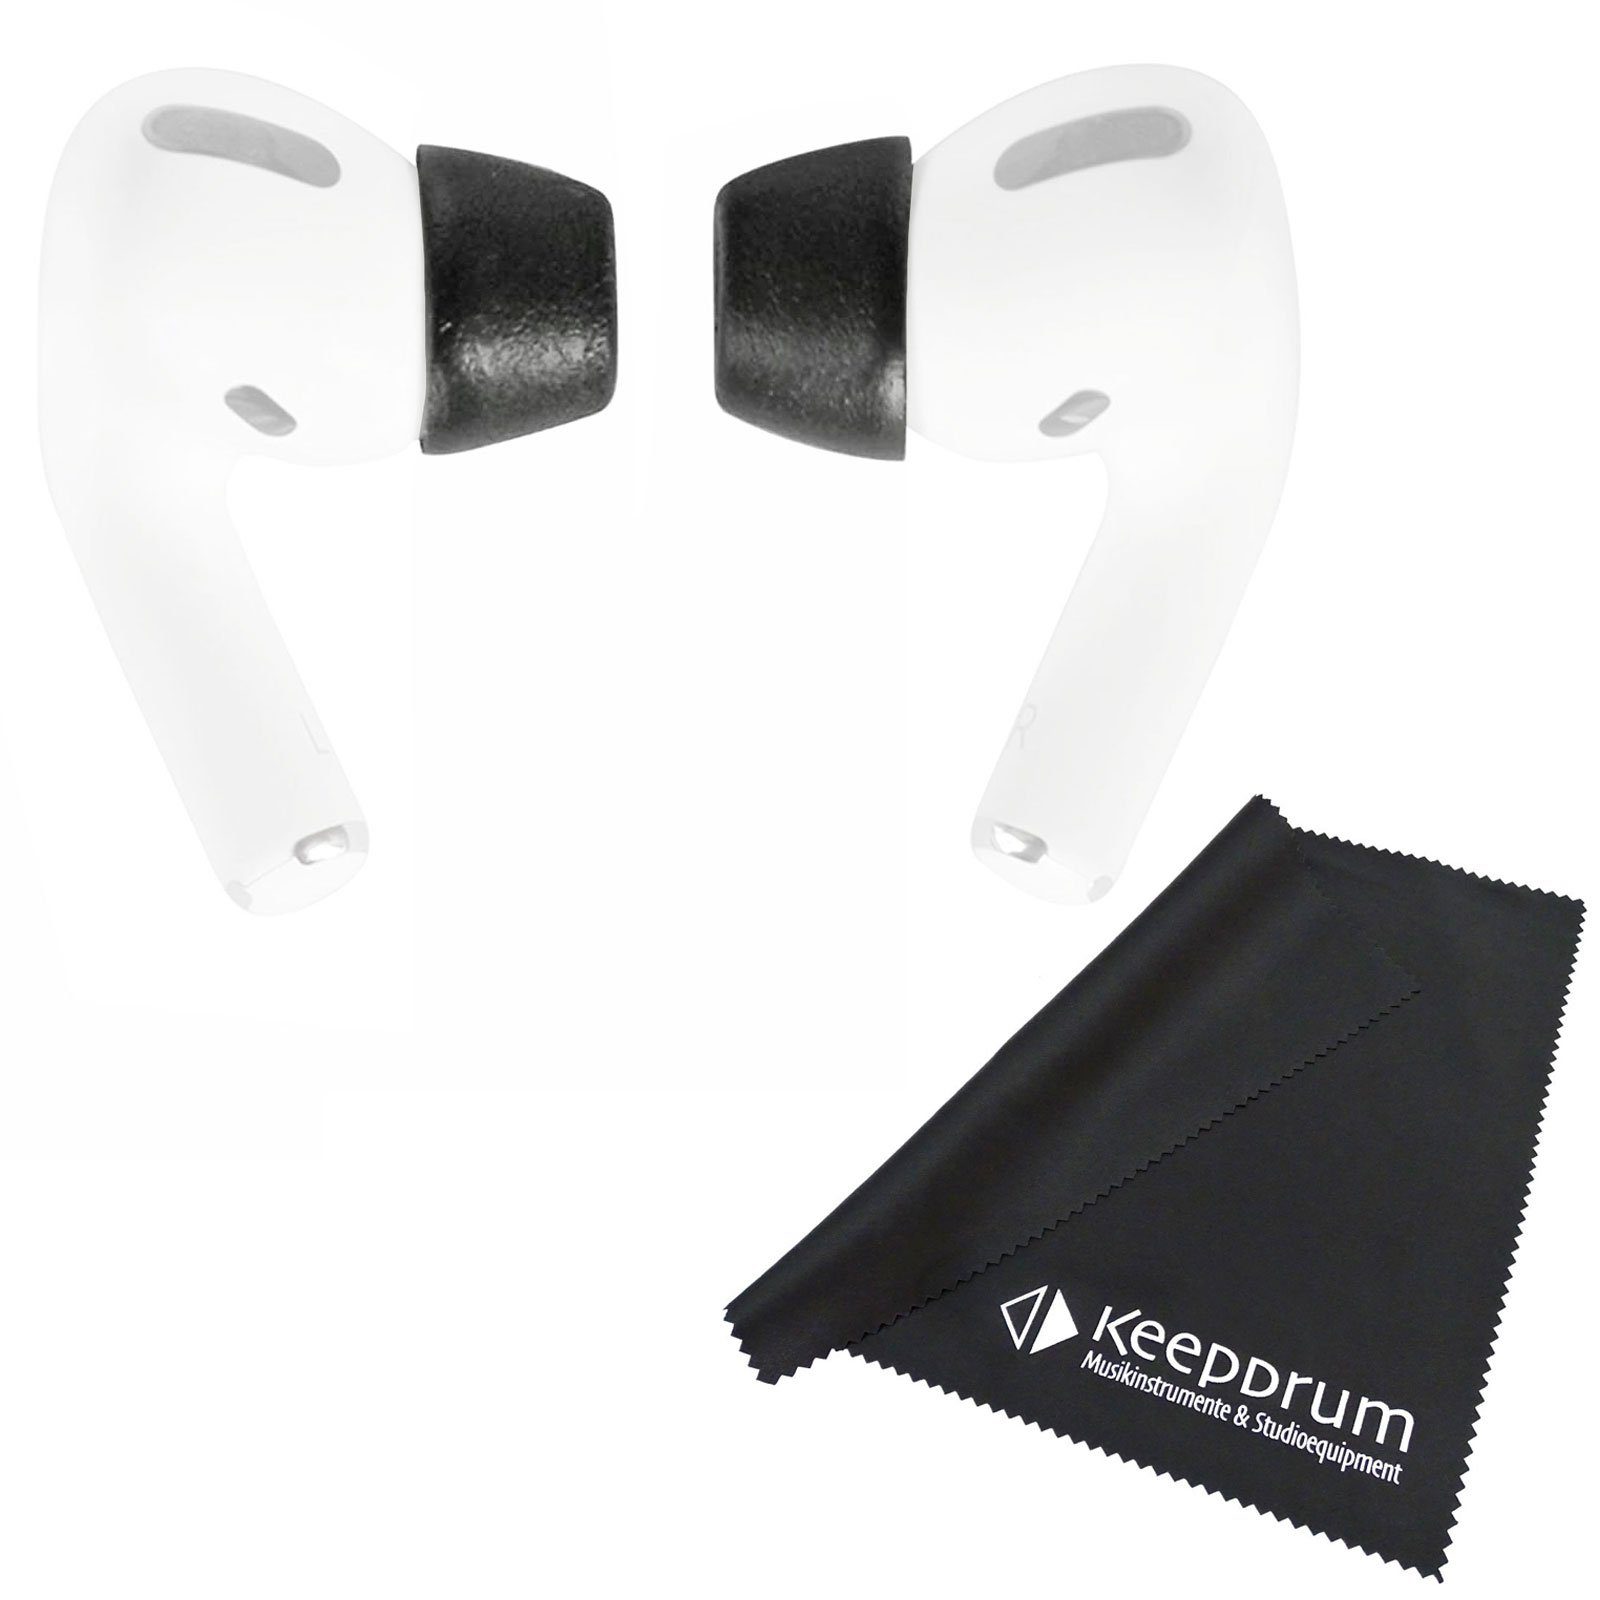 Ohrstöpsel M AirPods Comply nicht nicht Mikrofasertuch für In-Ear-Kopfhörer zutreffend) Größe (Hoher + Tragekomfort, zutreffend, Sicherer Pro 2.0 Comply Sitz,